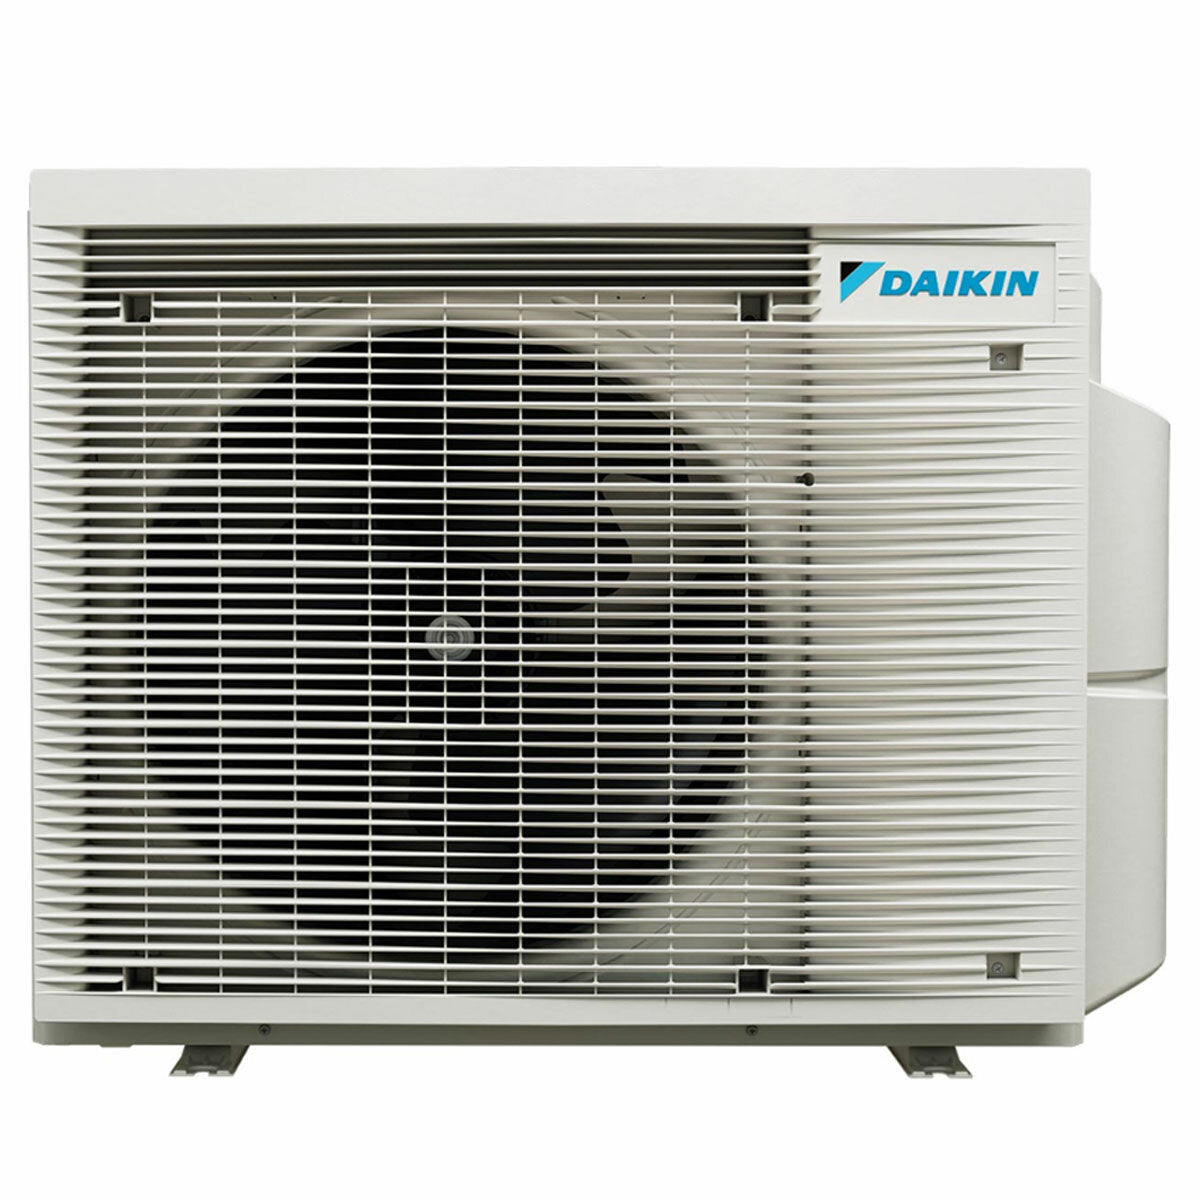 Daikin Emura 3 trial split air conditioner 7000+9000+15000 BTU inverter A+ wifi outdoor unit 6.8 kW Silver